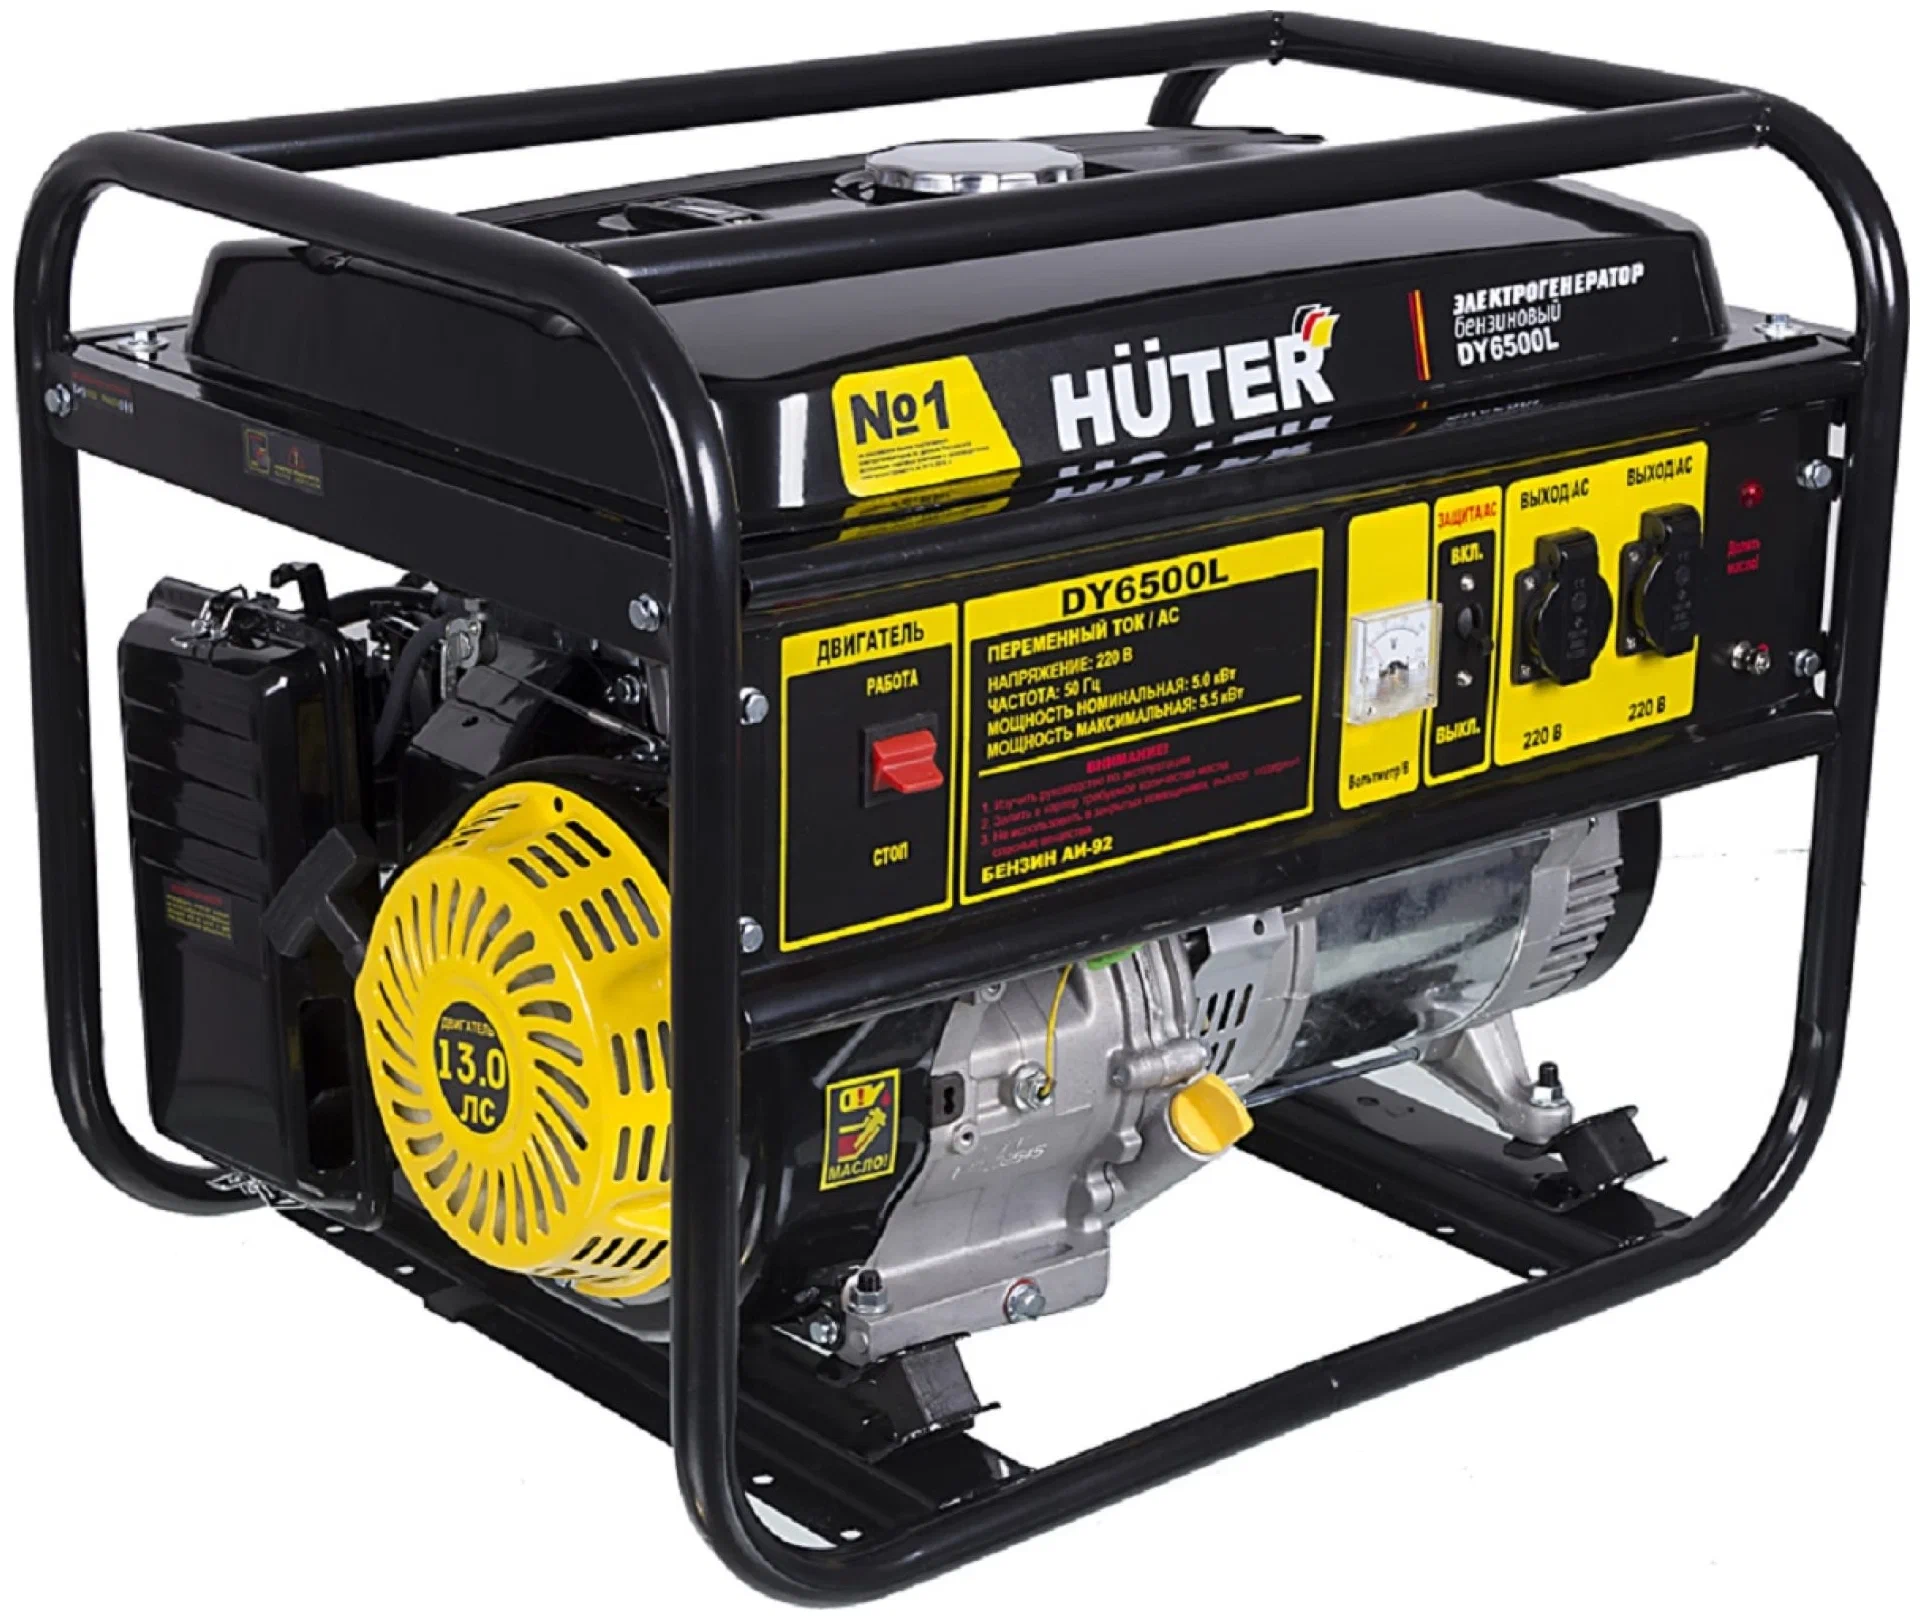 Huter DY6500L, (5500 Вт) - максимальная мощность: 5500 Вт